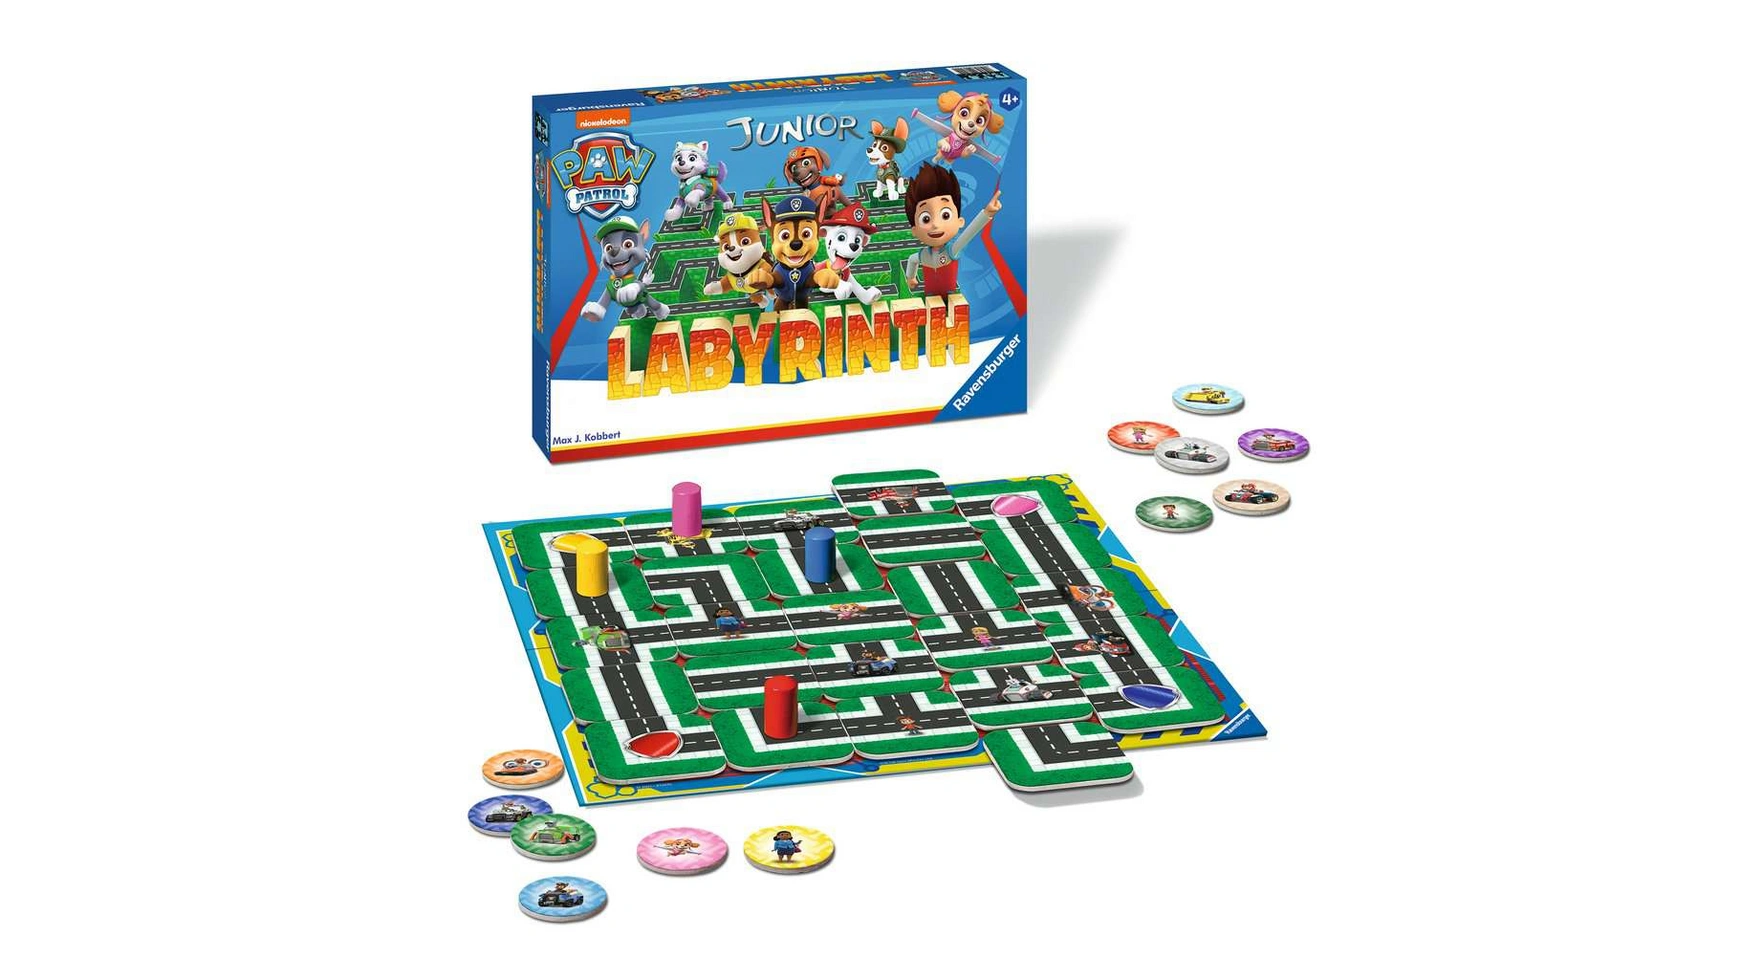 Ravensburger Spiele Paw Patrol Junior Labyrinth, известная настольная игра от Ravensburger в детской версии щенячий патруль 6028796 настольная игра с кубиком и фишками